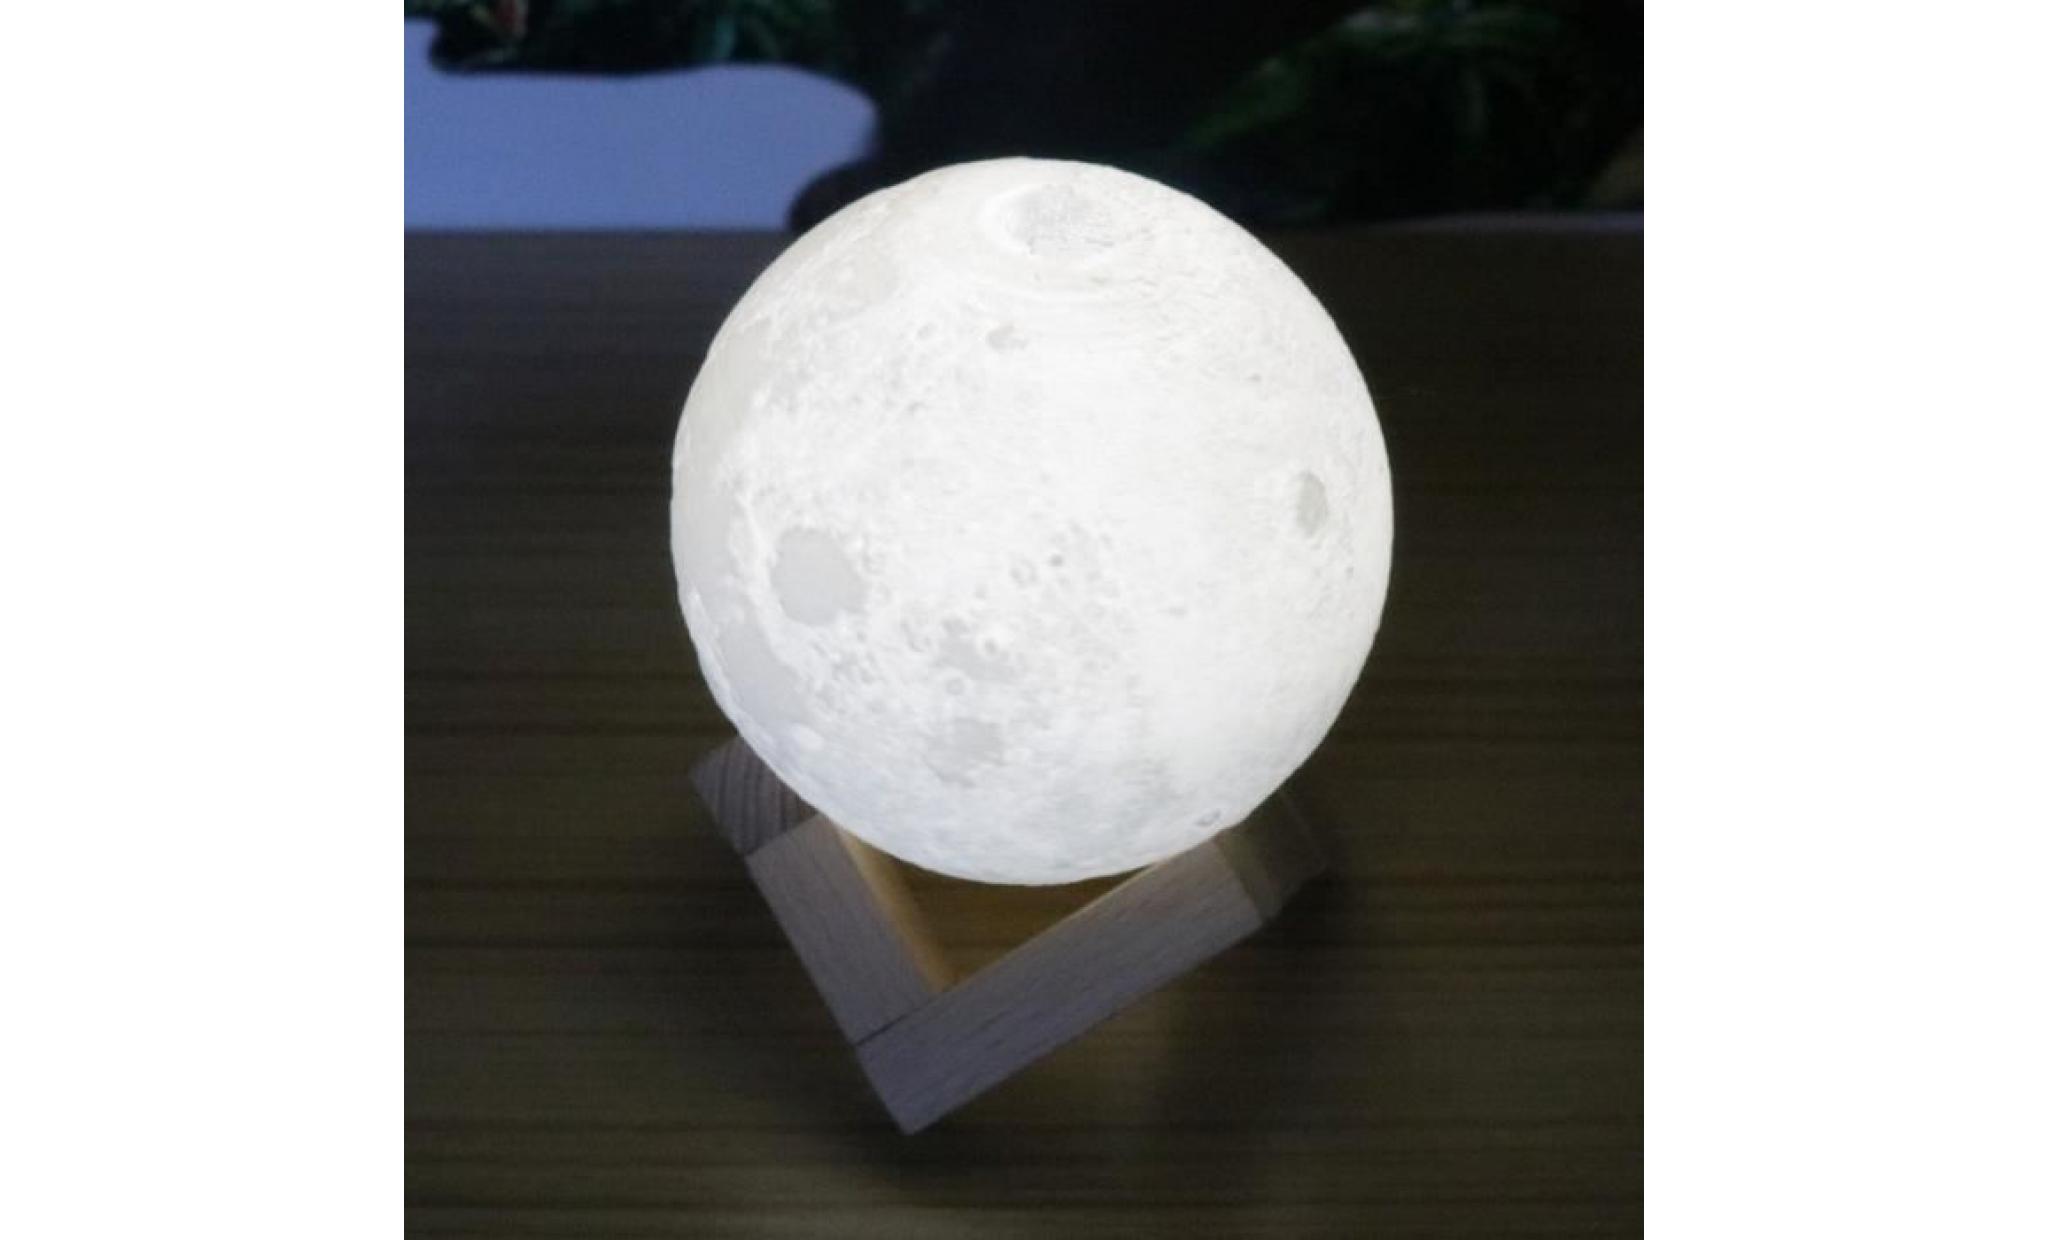 impression en 3d lune lampe   tactile lampe de chevet 3d lune led nuit lumière de nuit de chambre cadeau pour noël   8cm pas cher